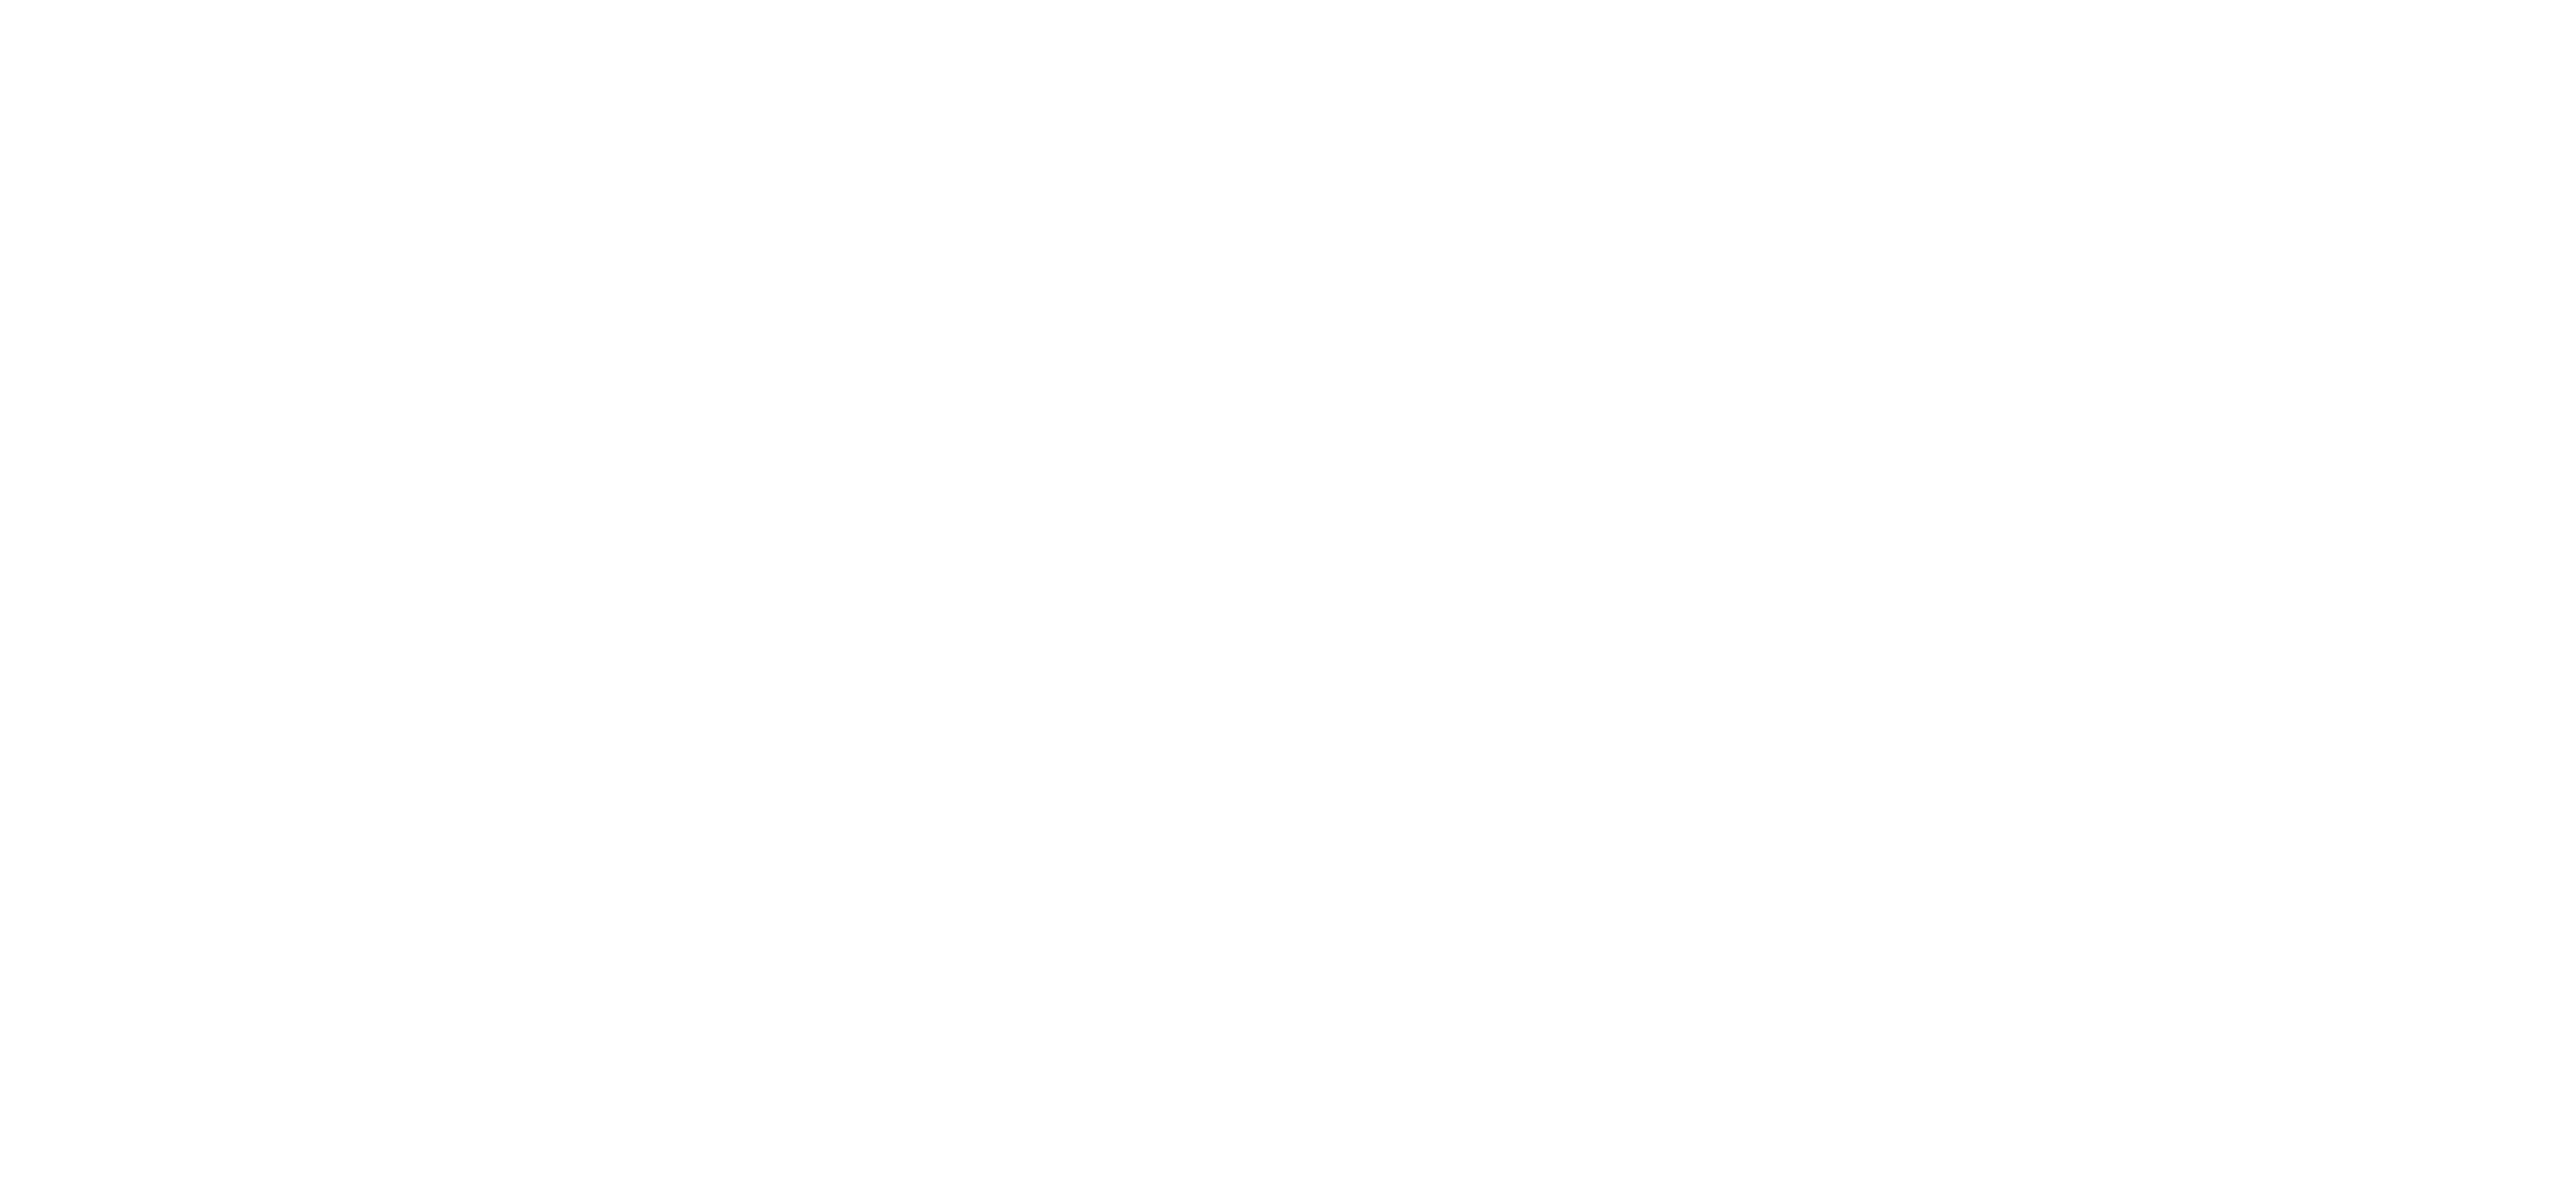 KiwiSpan